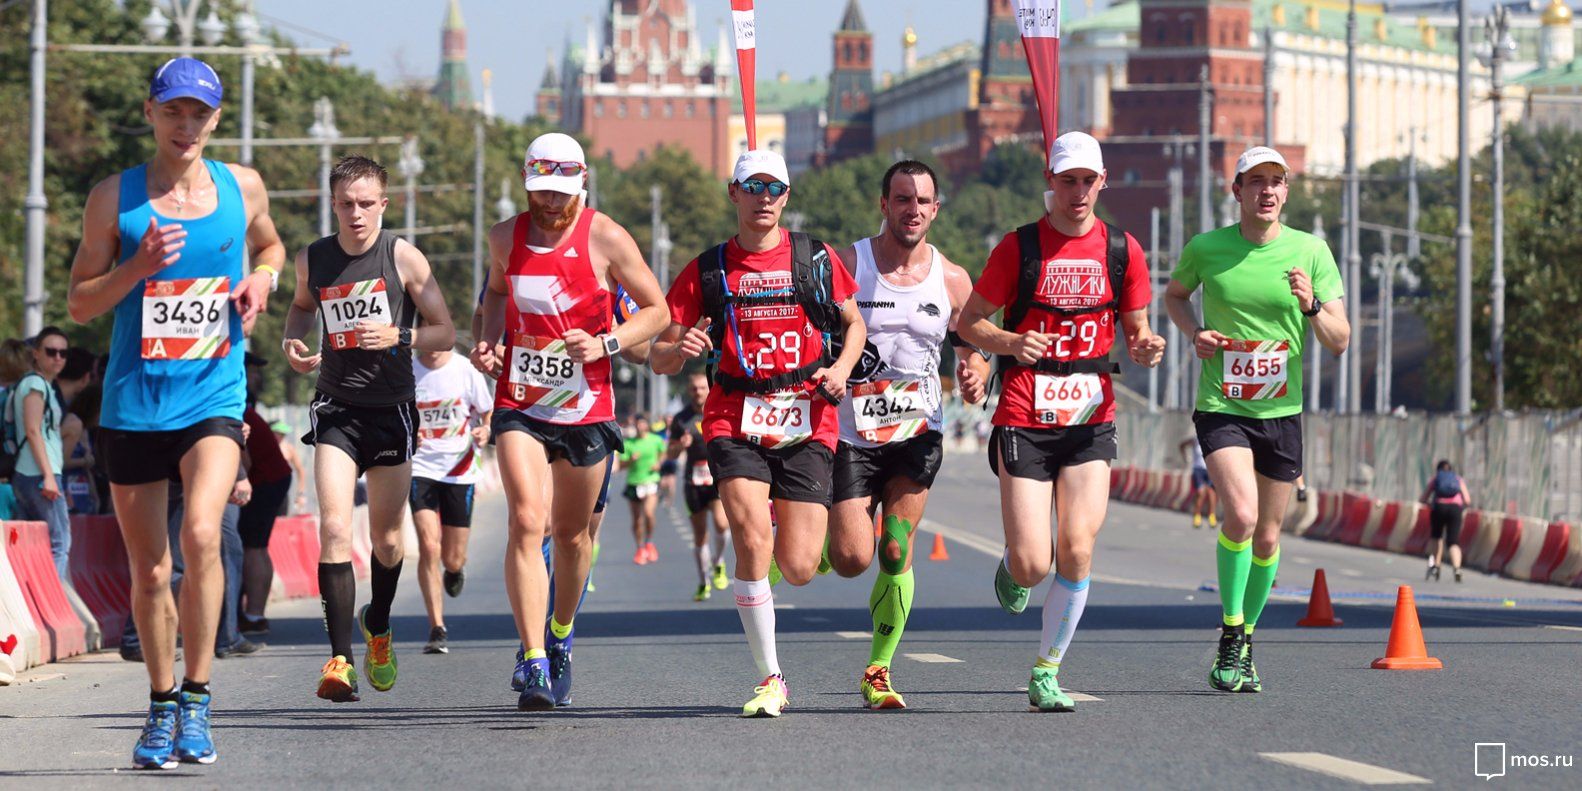 Около ста человек примут участие в окружном соревновании по бегу в Пресненском районе. Фото: сайт мэра Москвы